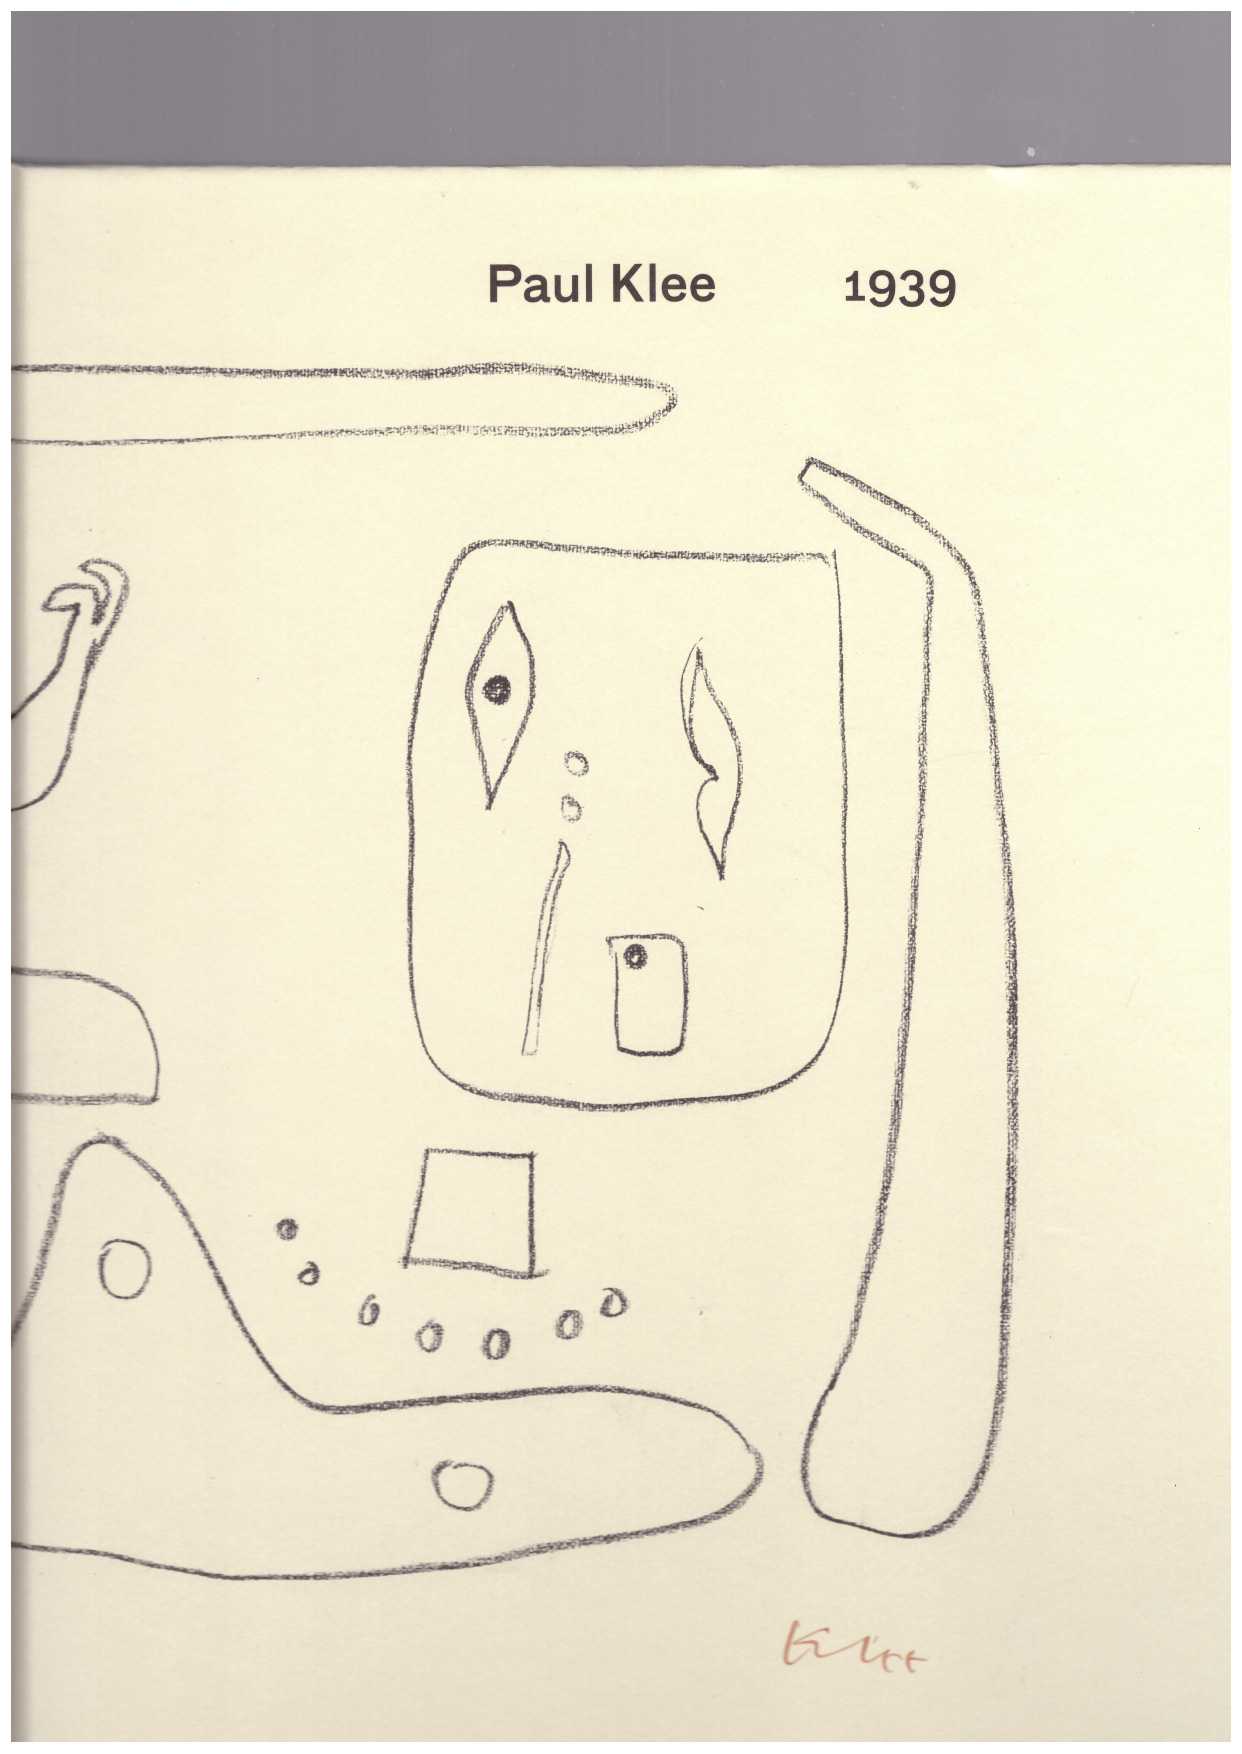 KLEE, Paul - Paul Klee 1939